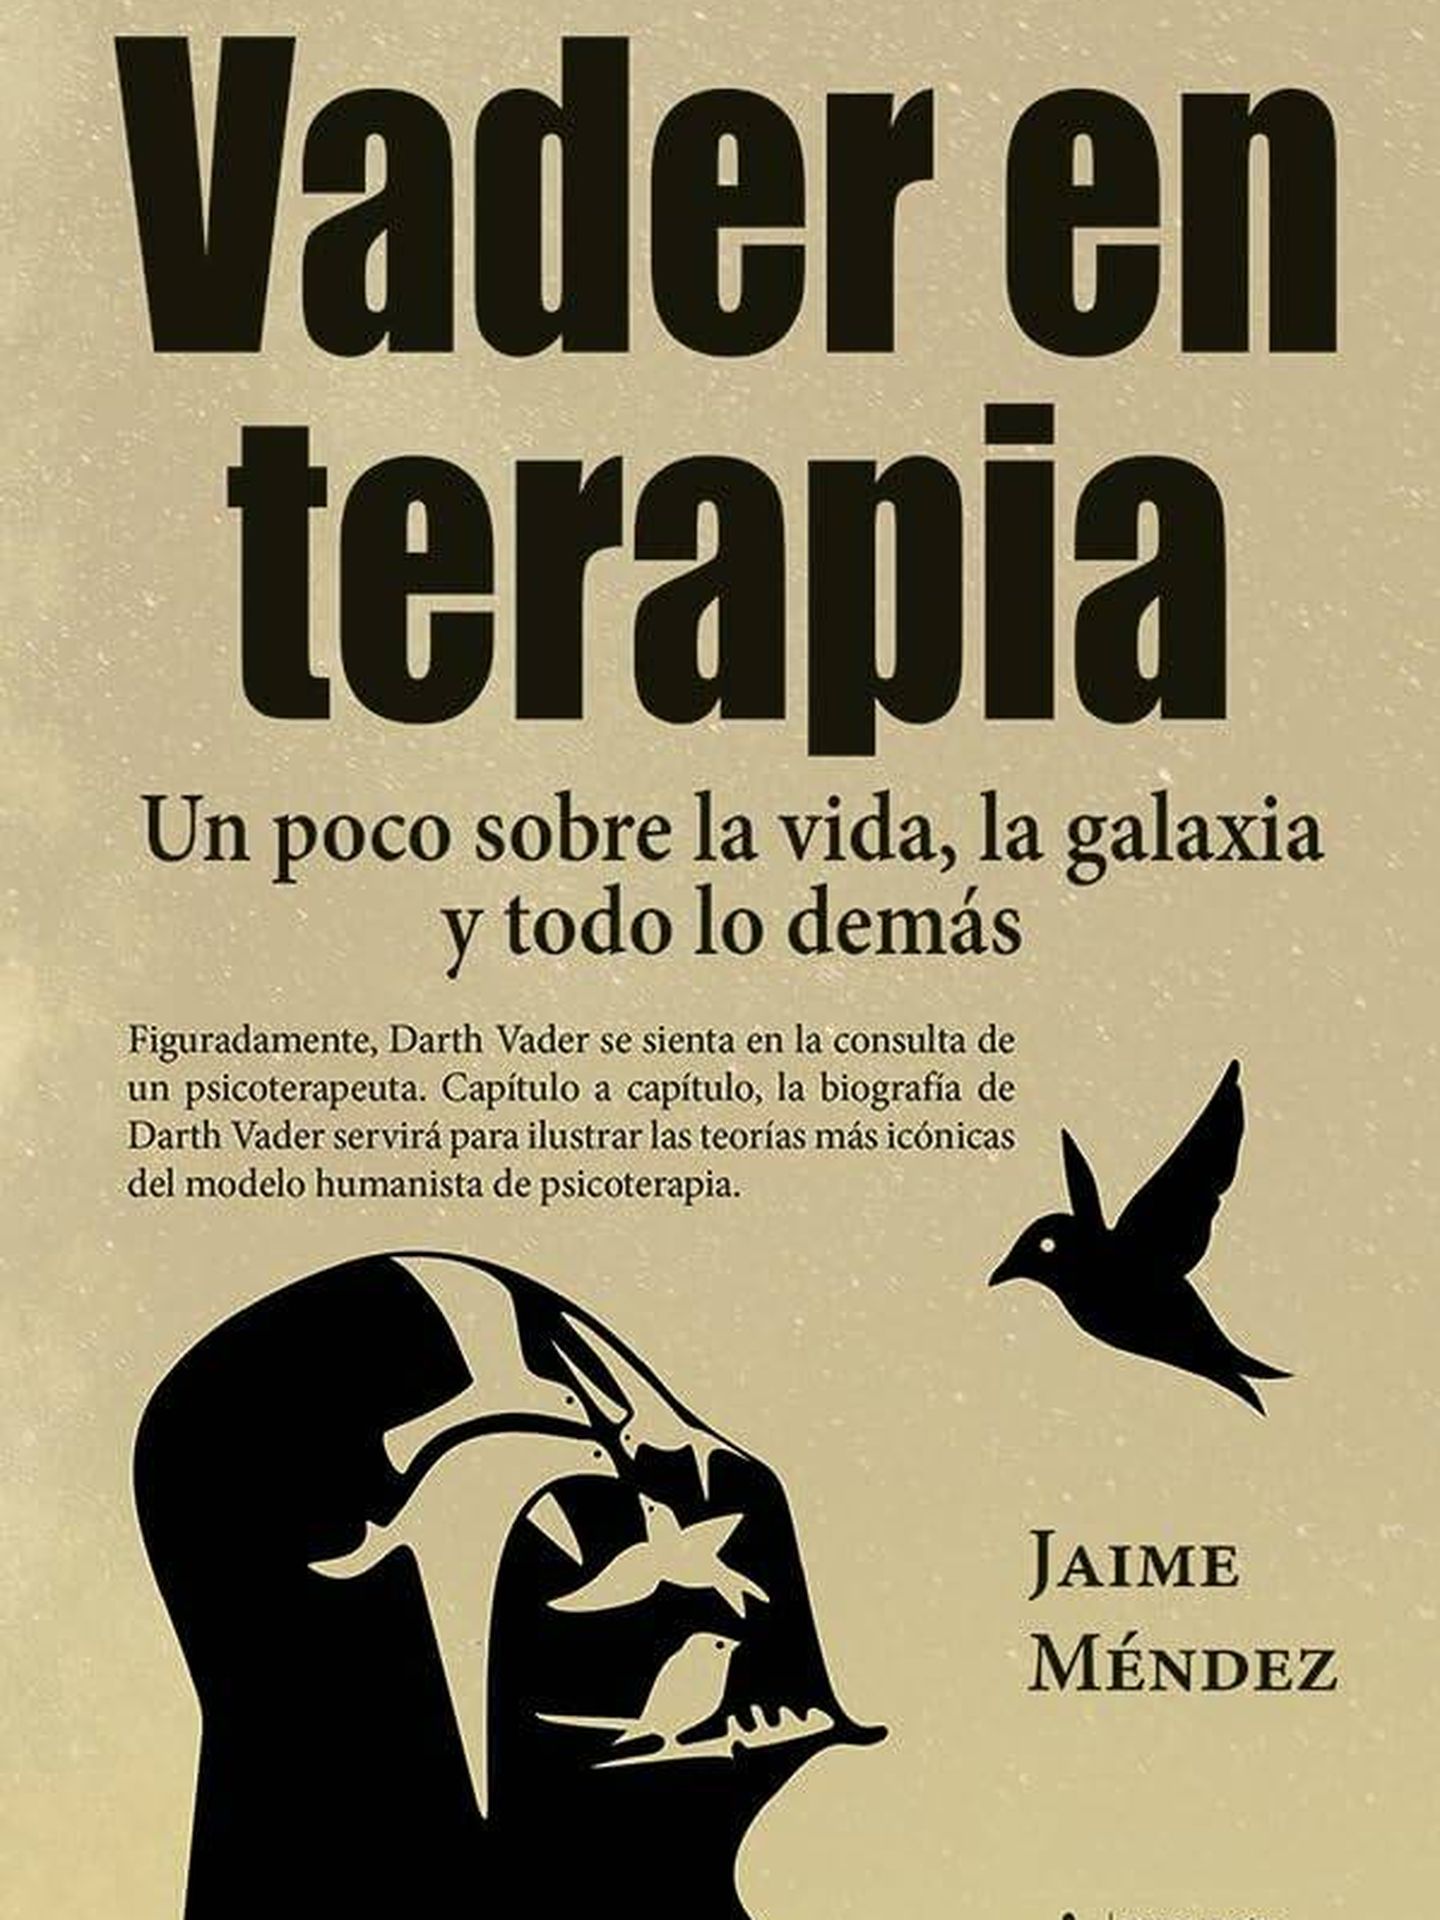 Portada de 'Vader en terapia', de Jaime Méndez. 